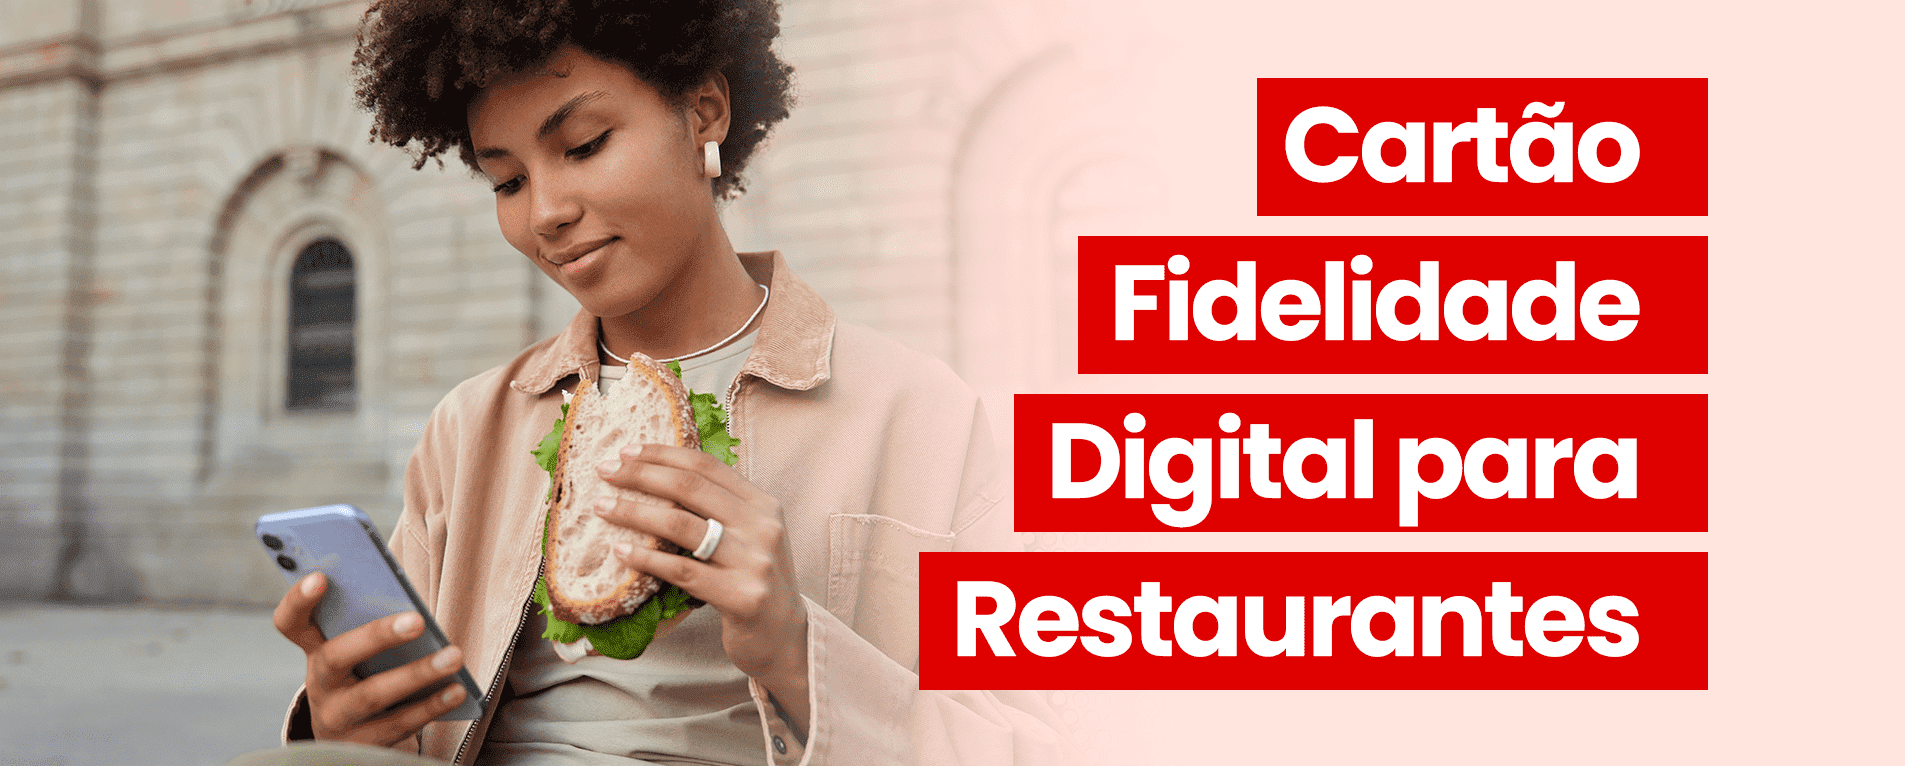 Como Fazer um Cartão Fidelidade Digital para Restaurantes?